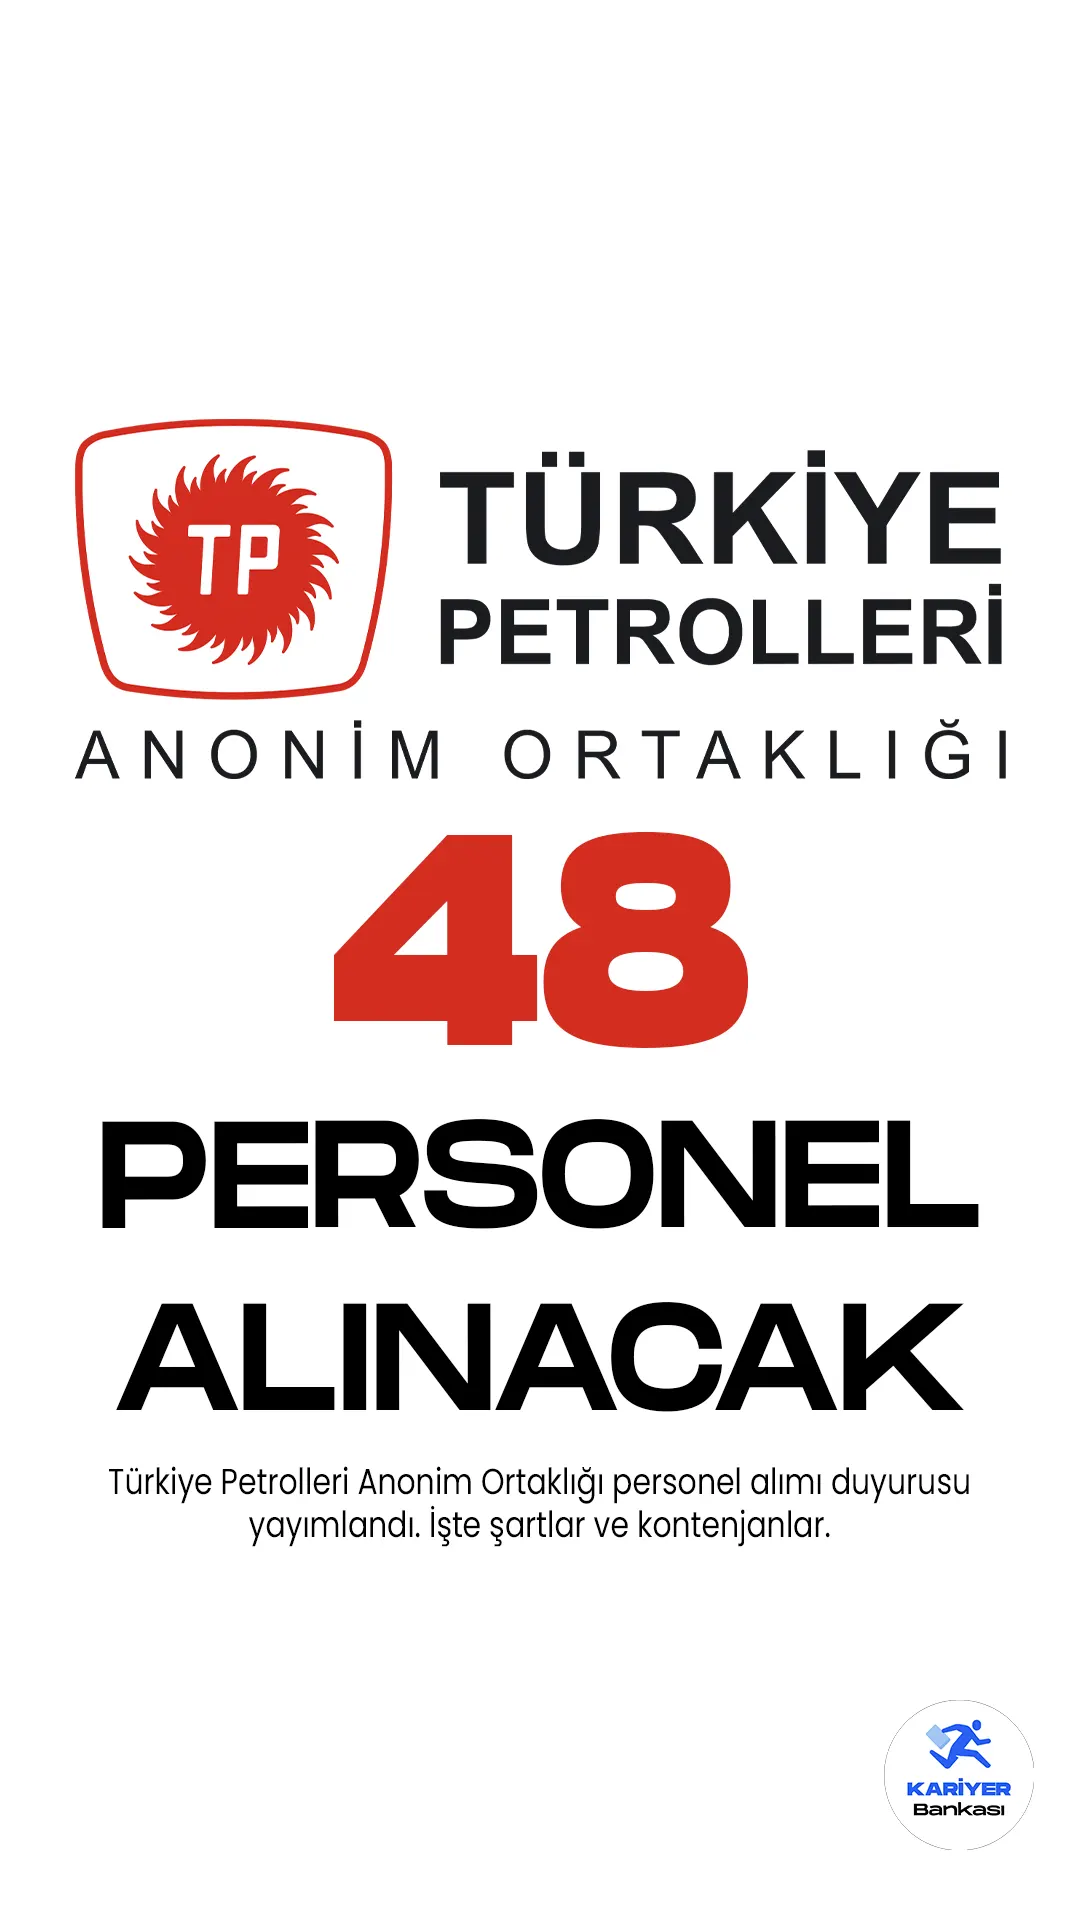 Türkiye Petrolleri Anonim Ortaklığı (TPAO) personel alımı duyurusu yayımlandı. Cumhurbaşkanlığı SBB'de yayımlanan duyuruda, TPAO'ya üretim operatör yardımcısı, elektrikçi, ambarcı, malzeme eksperi, harita teknisyeni, servis görevlisi, inşaat teknisyeni, tesisatçı, iş güvenliği teknisyeni, sağlık görevlisi, denetim ve kontrol sorumlusu, sistem destekçisi, arşivci, araç takip görevlisi, muhasebe servis görevlisi unvanlarında işçi alımı yapılacağı aktarıldı. Başvurular 29 Mayıs-2 Haziran 2023 tarihleri arasında alınacağı kaydedildi. Başvuru yapacak adayların belirtilen genel ve özel şartları dikkatle incelemesi gerekmektedir.